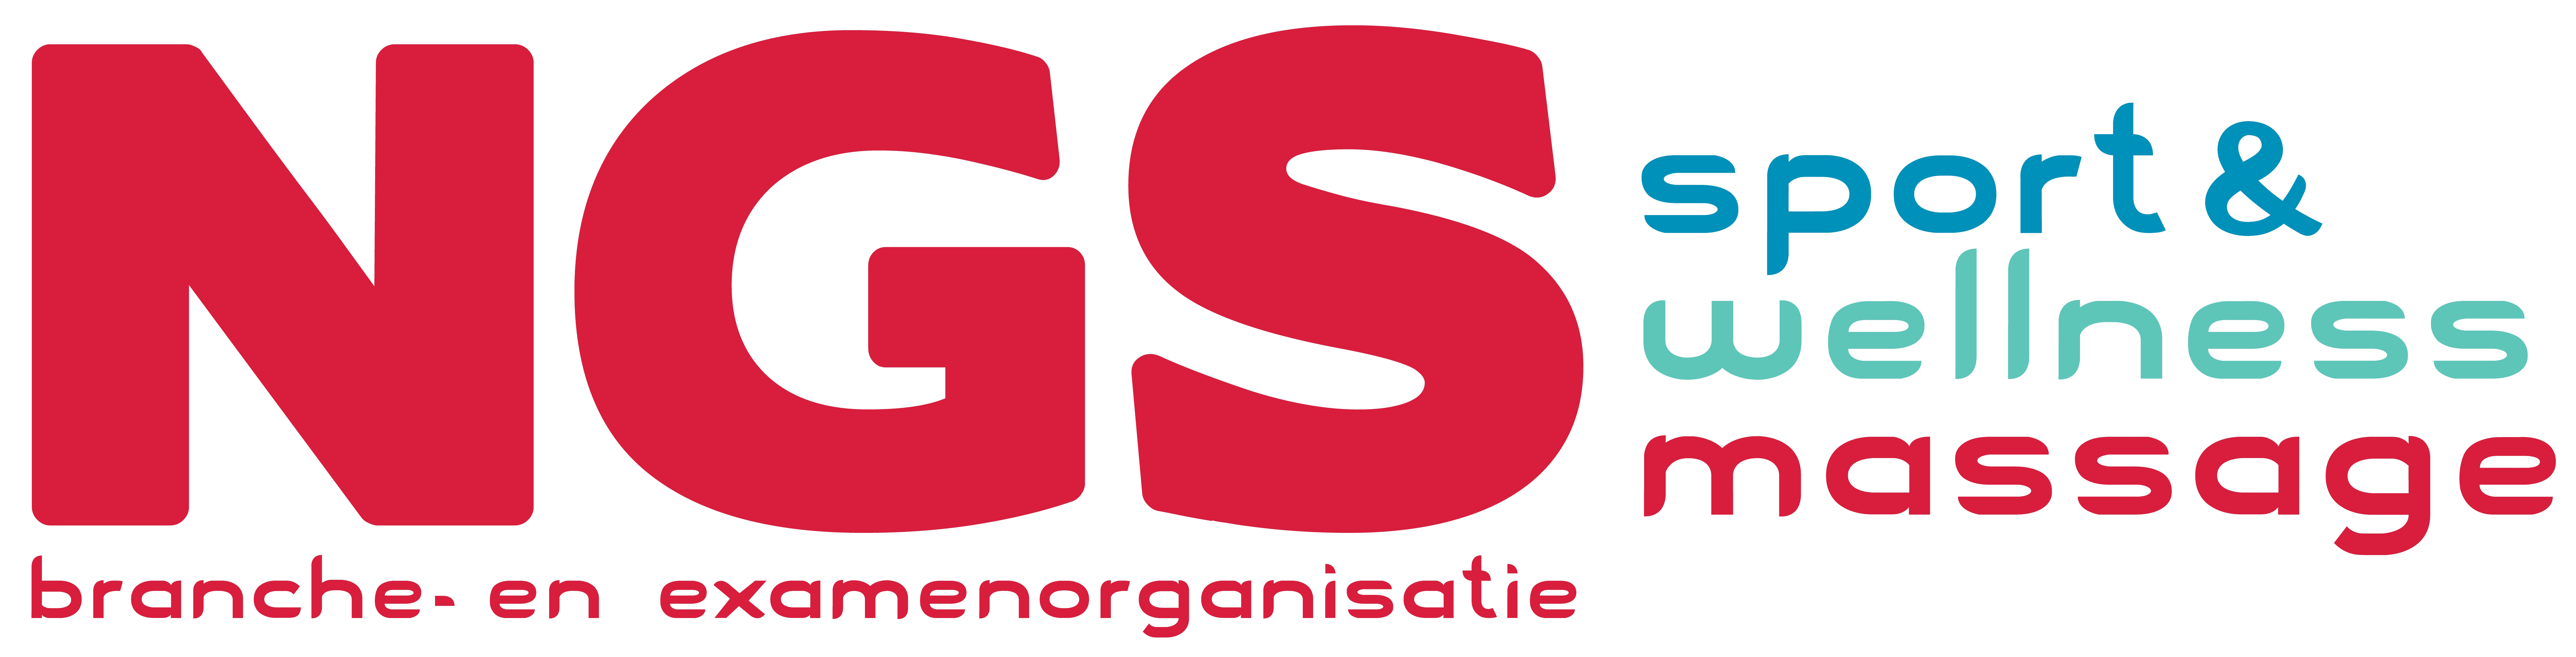 logo_ngs.png